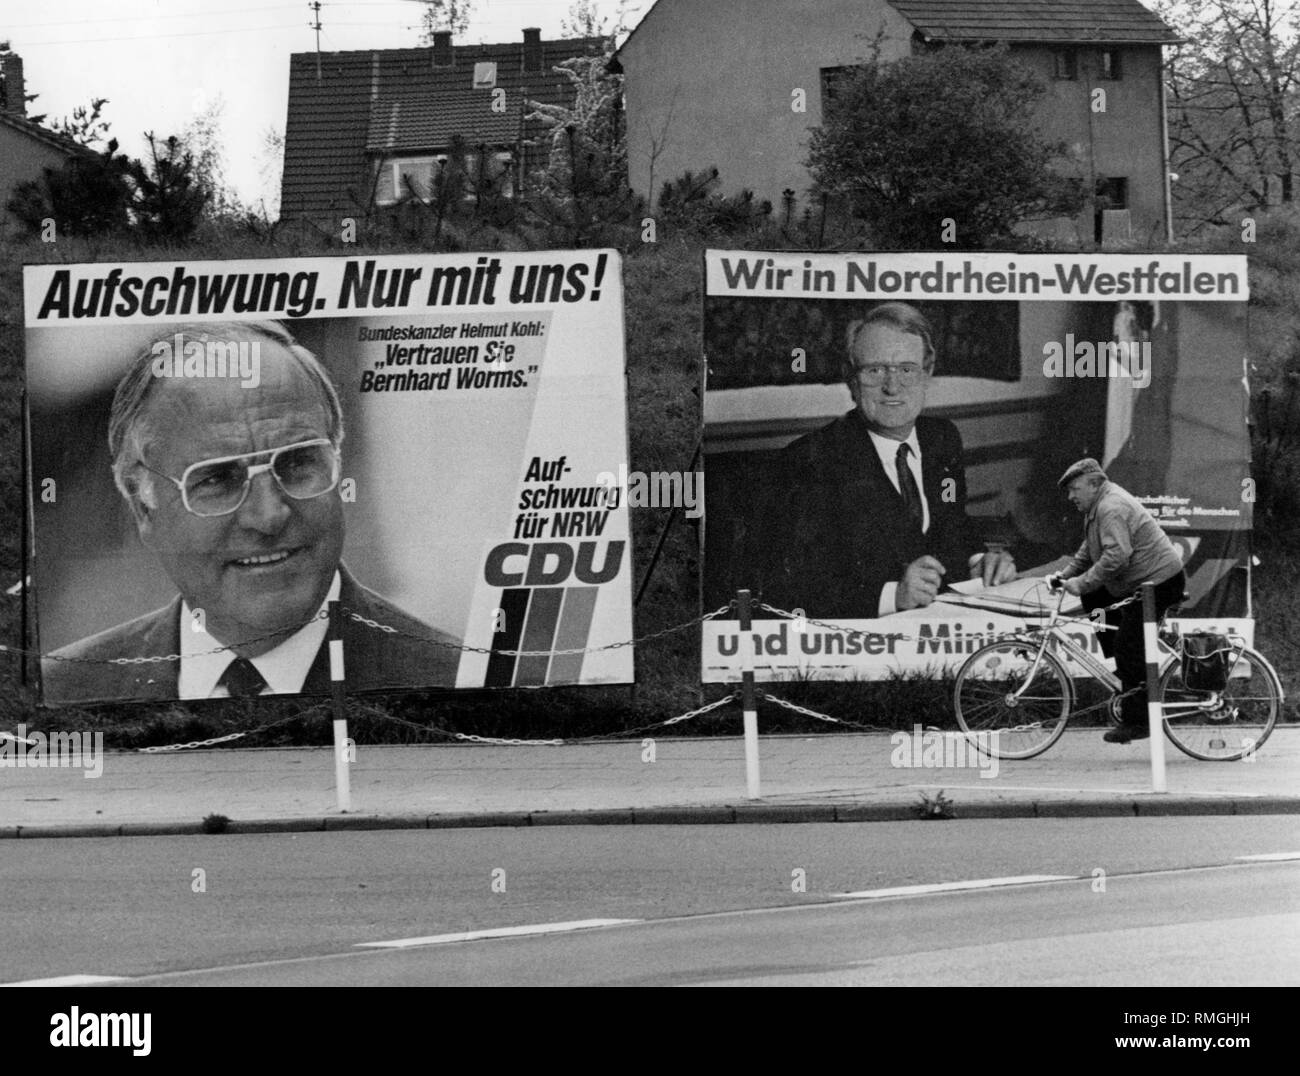 Zwei wahl Plakate für die Landtagswahl in Nordrhein-Westfalen am 12.5.1985 auf einer Straße. Auf der linken Seite ist ein Plakat der CDU mit der Inschrift: "die wirtschaftliche Erholung. Nur mit uns! Revival für die NRW-CDU". Neben einem Portrait von Helmut Kohl mit einem Zitat: "Vertrauen Bernhard Worms.". Direkt daneben ein Plakat der SPD. Es lautet: "Wir in Nordrhein-Westfalen und unser Minister Präsidenten'. Zusätzlich ein Bild von Johannes Raus. Ein Teil der Inschrift der Poster ist verdeckt von einem vorbeifahrenden Radfahrer. Stockfoto